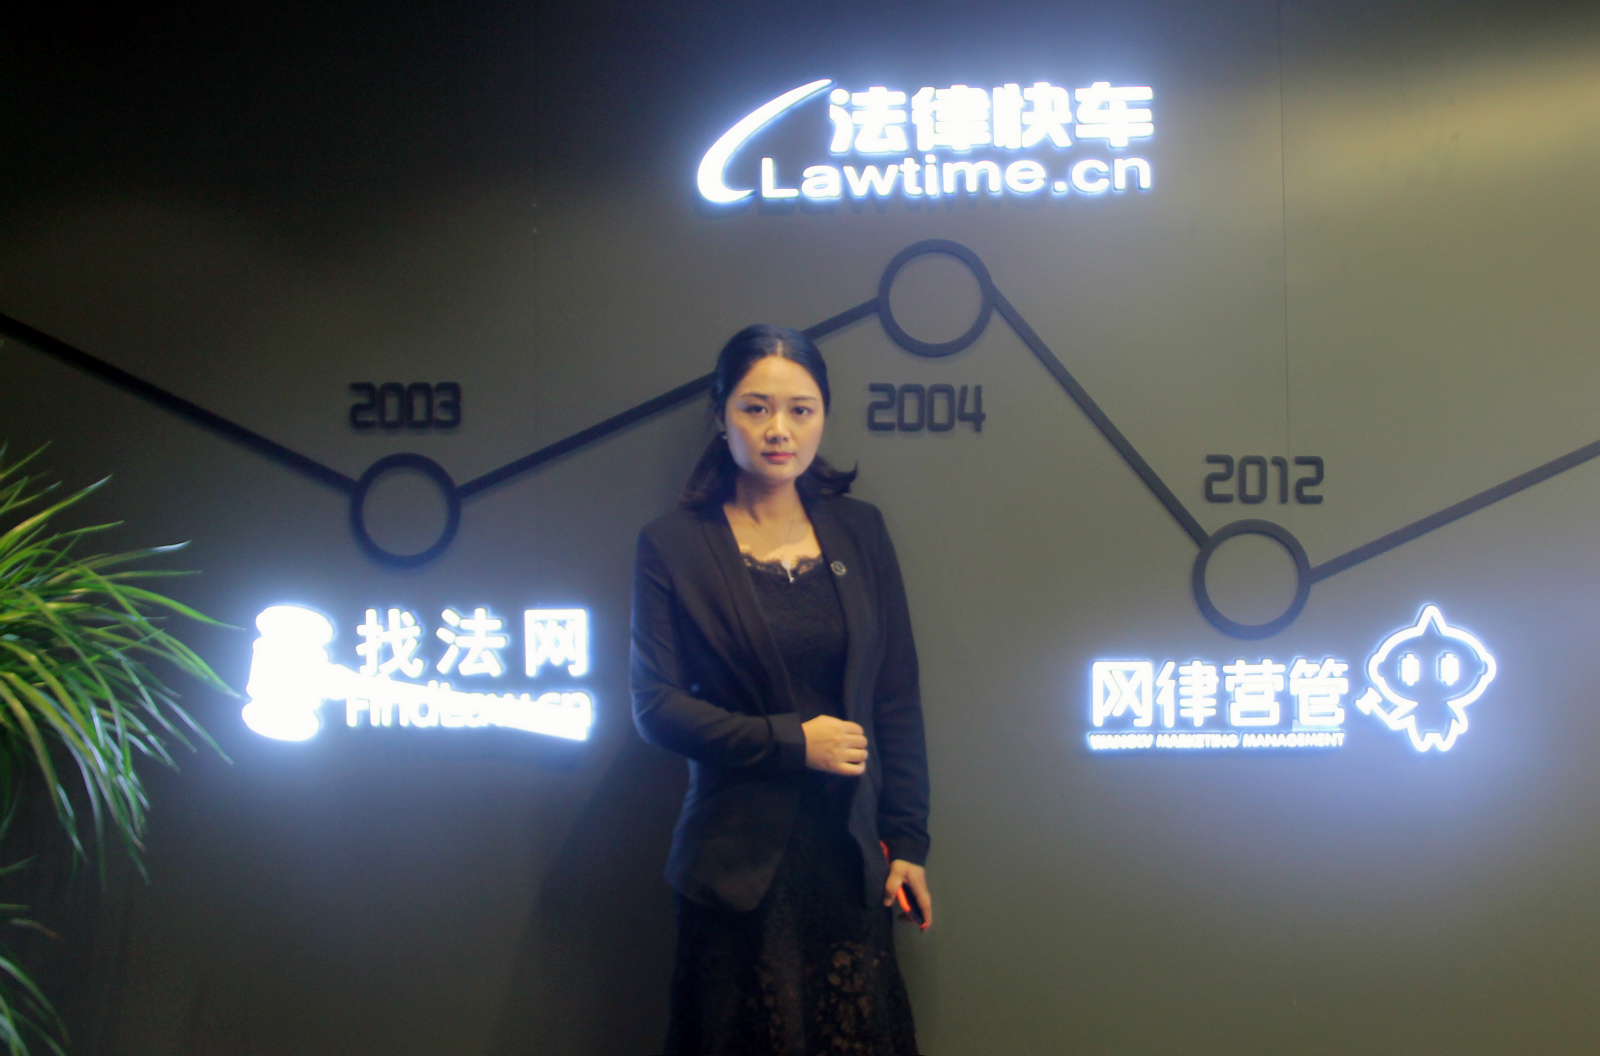 赵婧律师在找法网录制法律视频